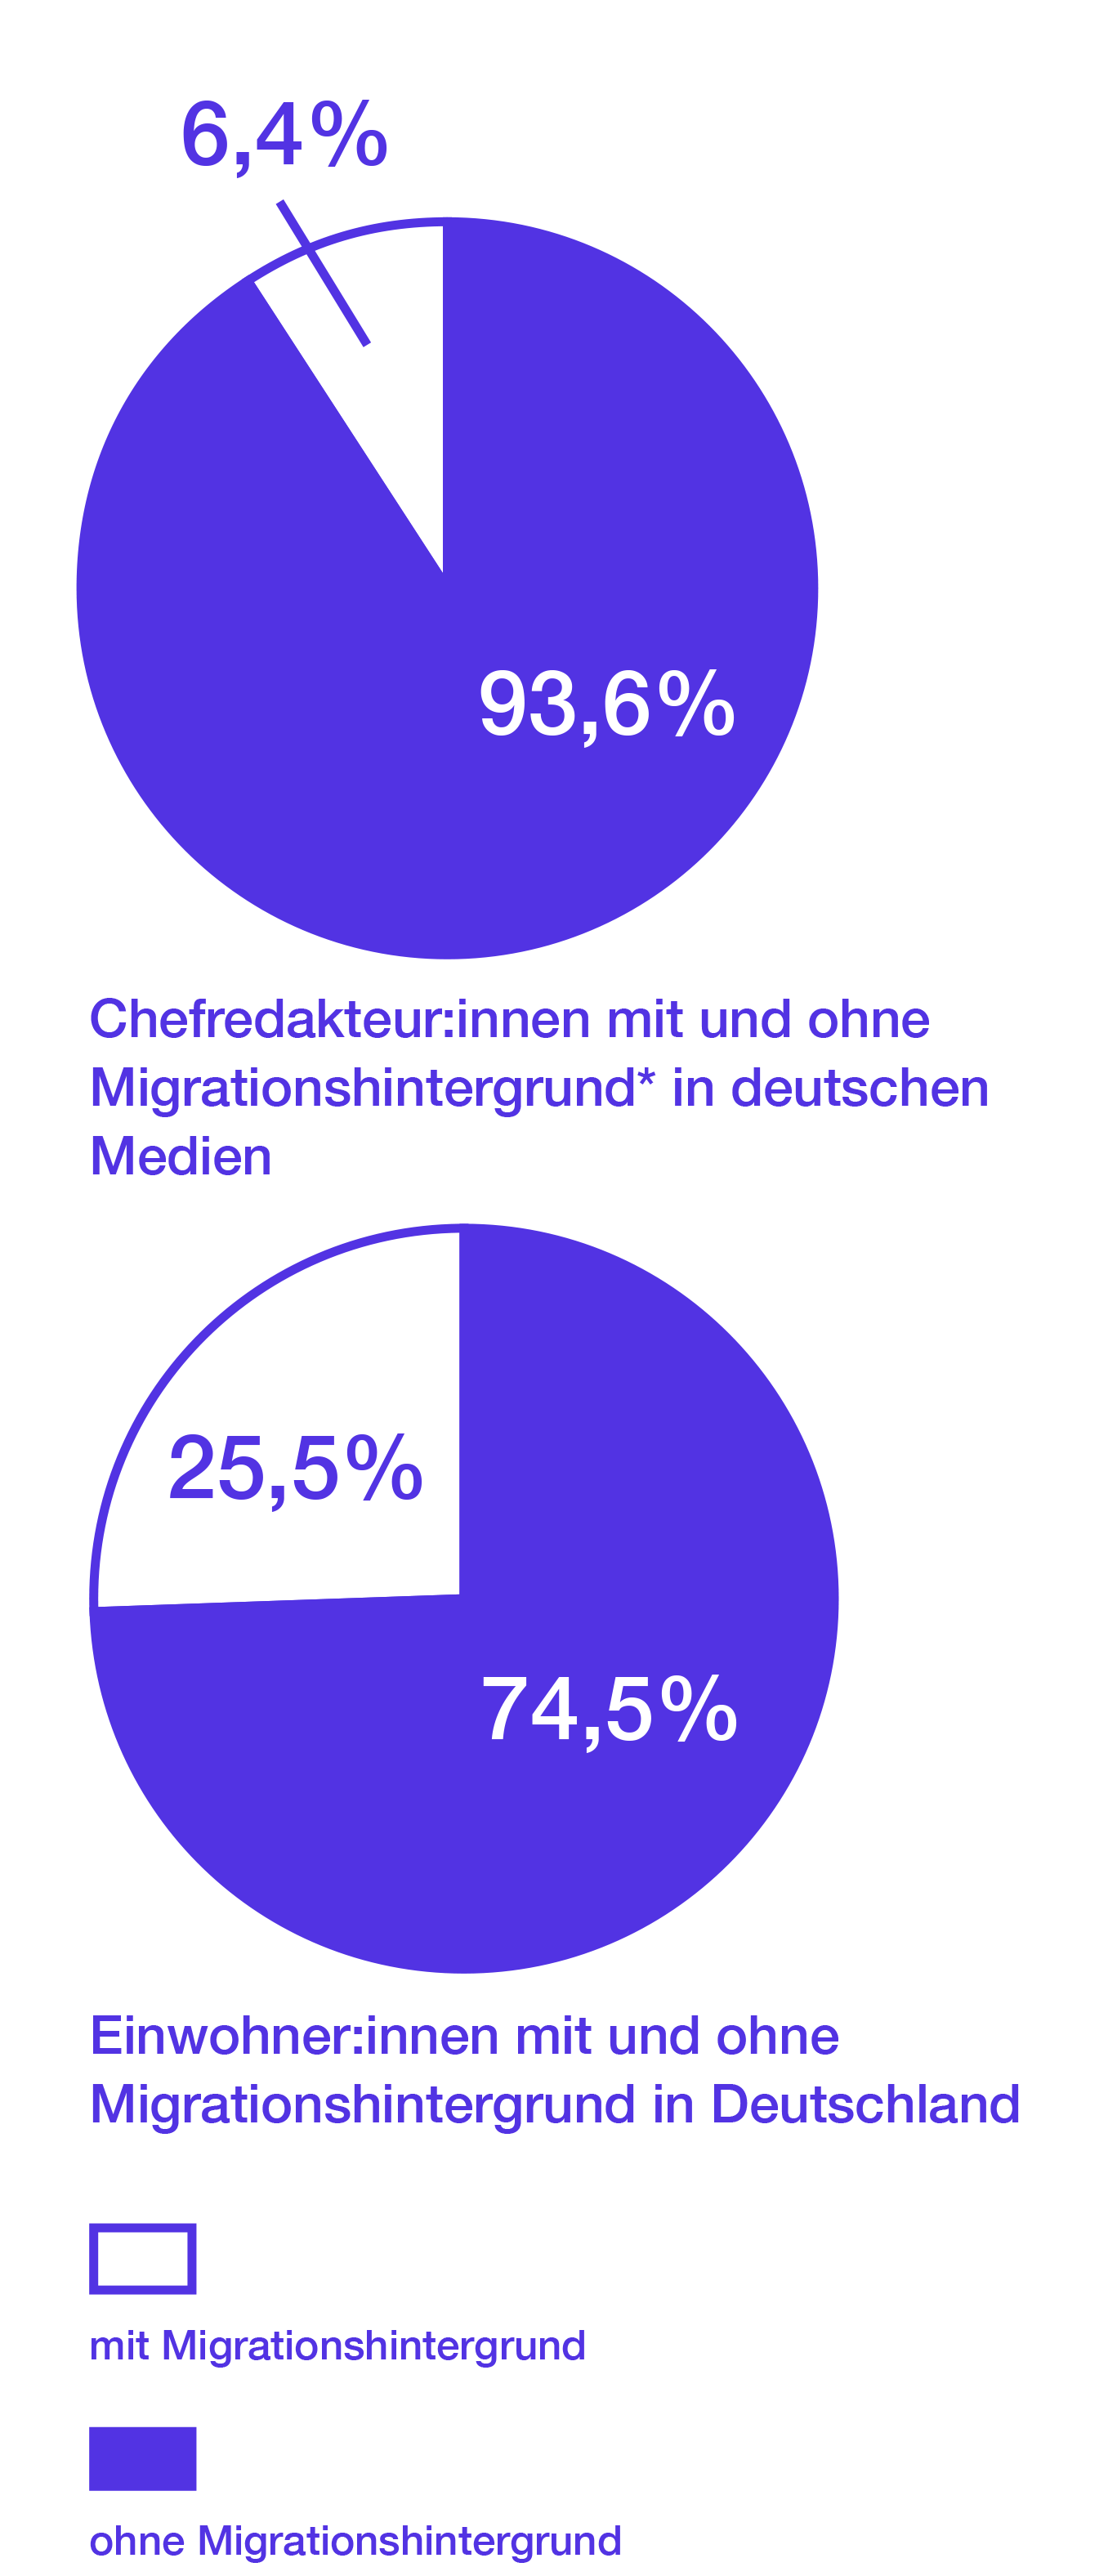 Chefredakteur*innen mit Migrationshintergrund in deutschen Medien: 6,4%. Ohne Migrationshintergrund: 93,6%. Einwohner*innen mit Migrationshintergrund: 25,5%. Ohne Migrationshintergrund: 74,5%.